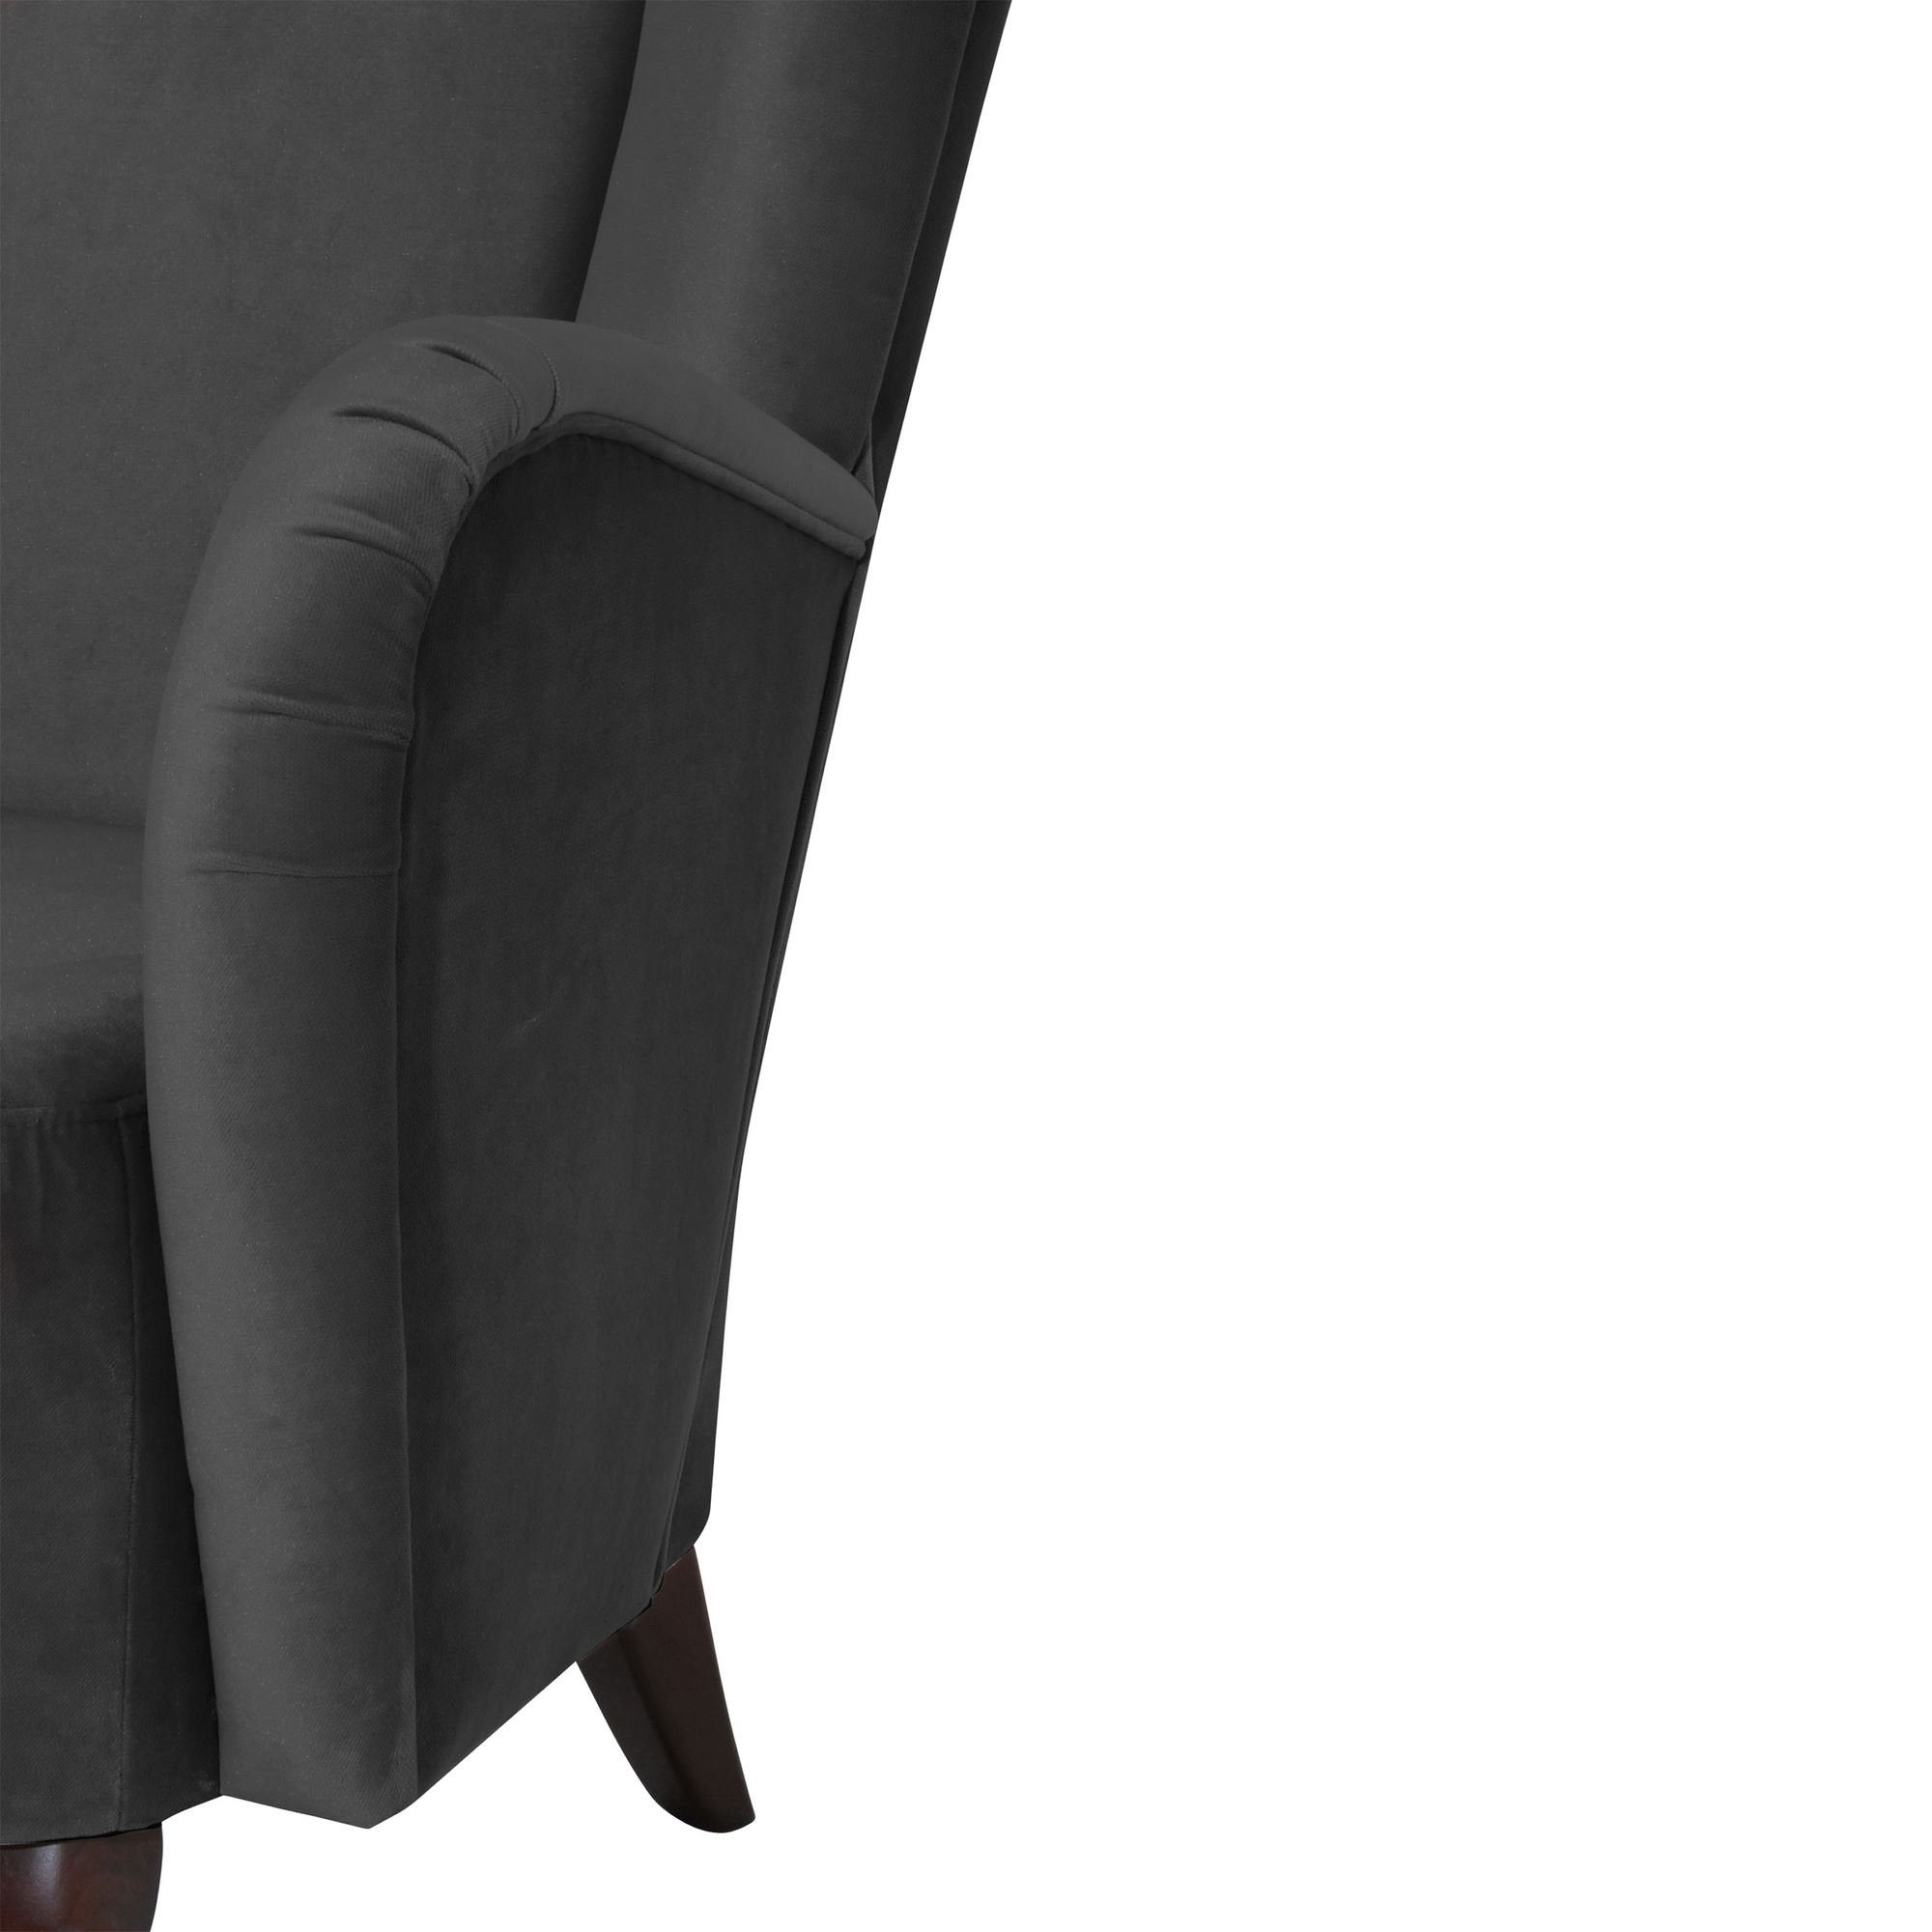 (Sparpreis 1-St), / hochwertig Bezug Sitz anthra nussbaum Sessel inkl. Versand, Kessel Kostenlosem Buche dunkel Hochlehnsessel Samtvelours verarbeitet,bequemer 58 Kailey aufm